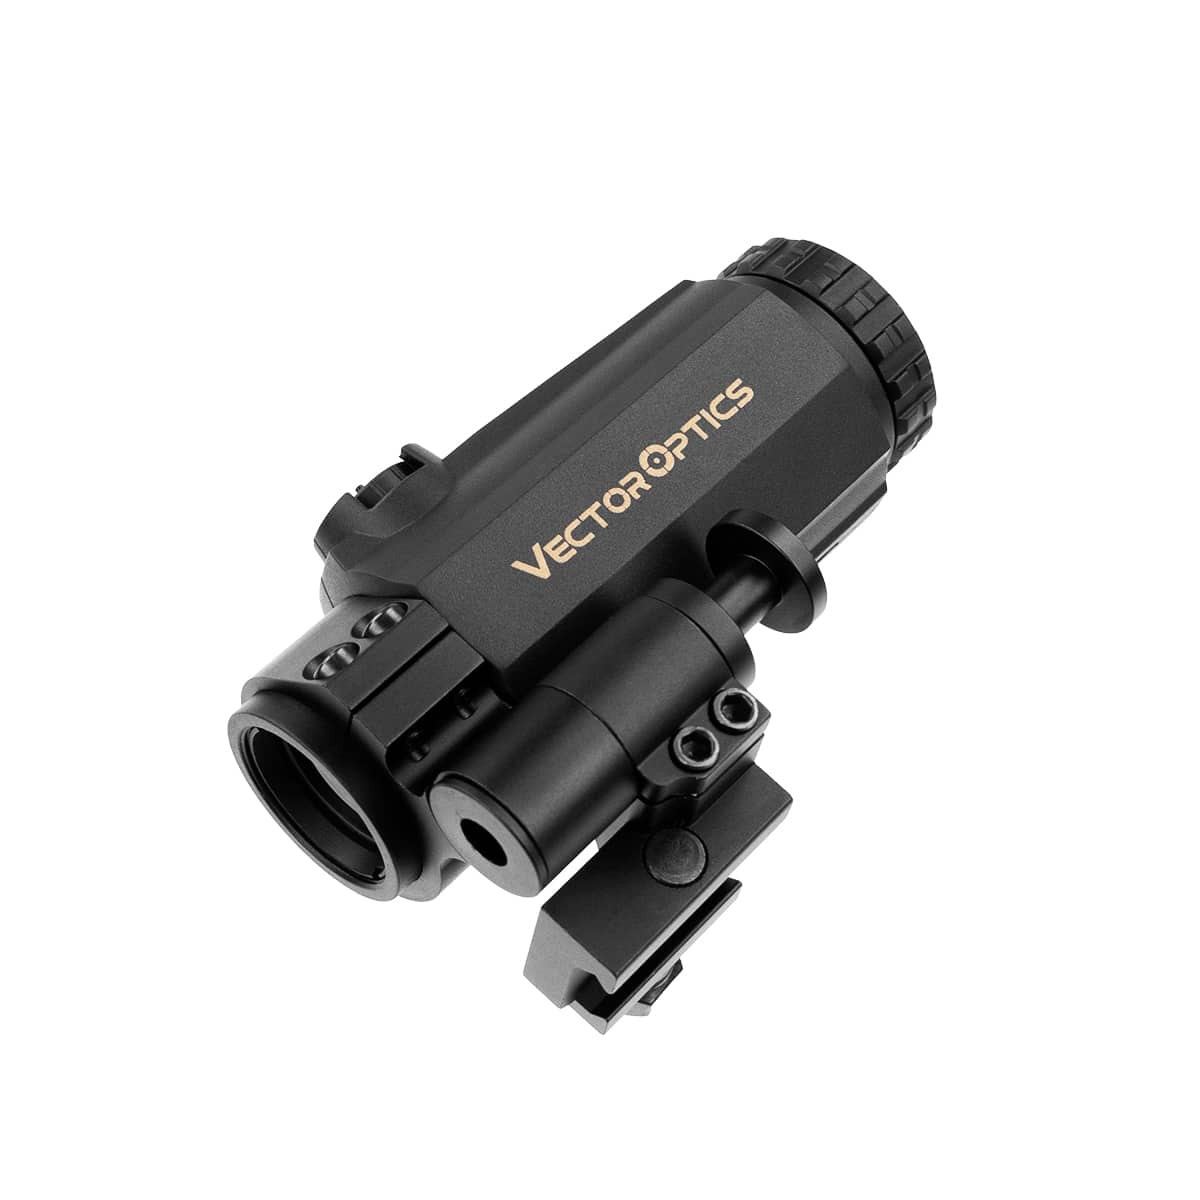 Novritsch Magnifier Optic 3x